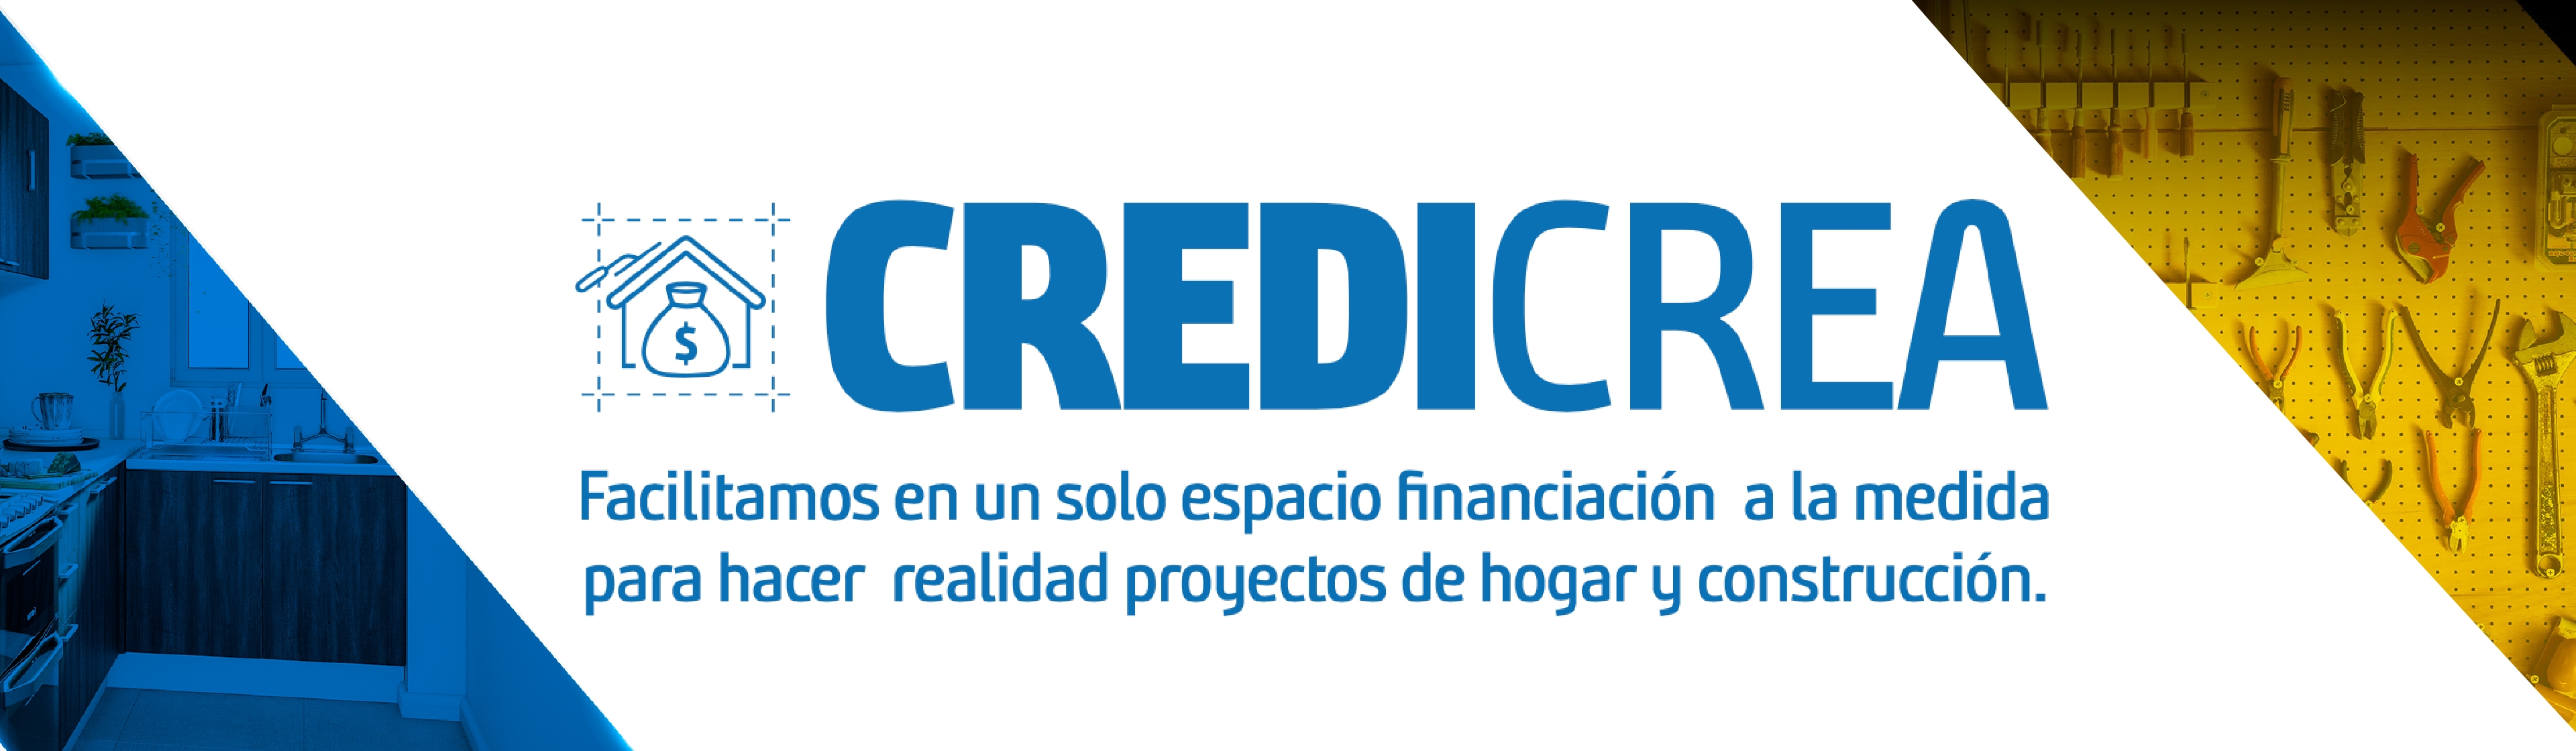 Financiacón hogar construccion CREDICREA